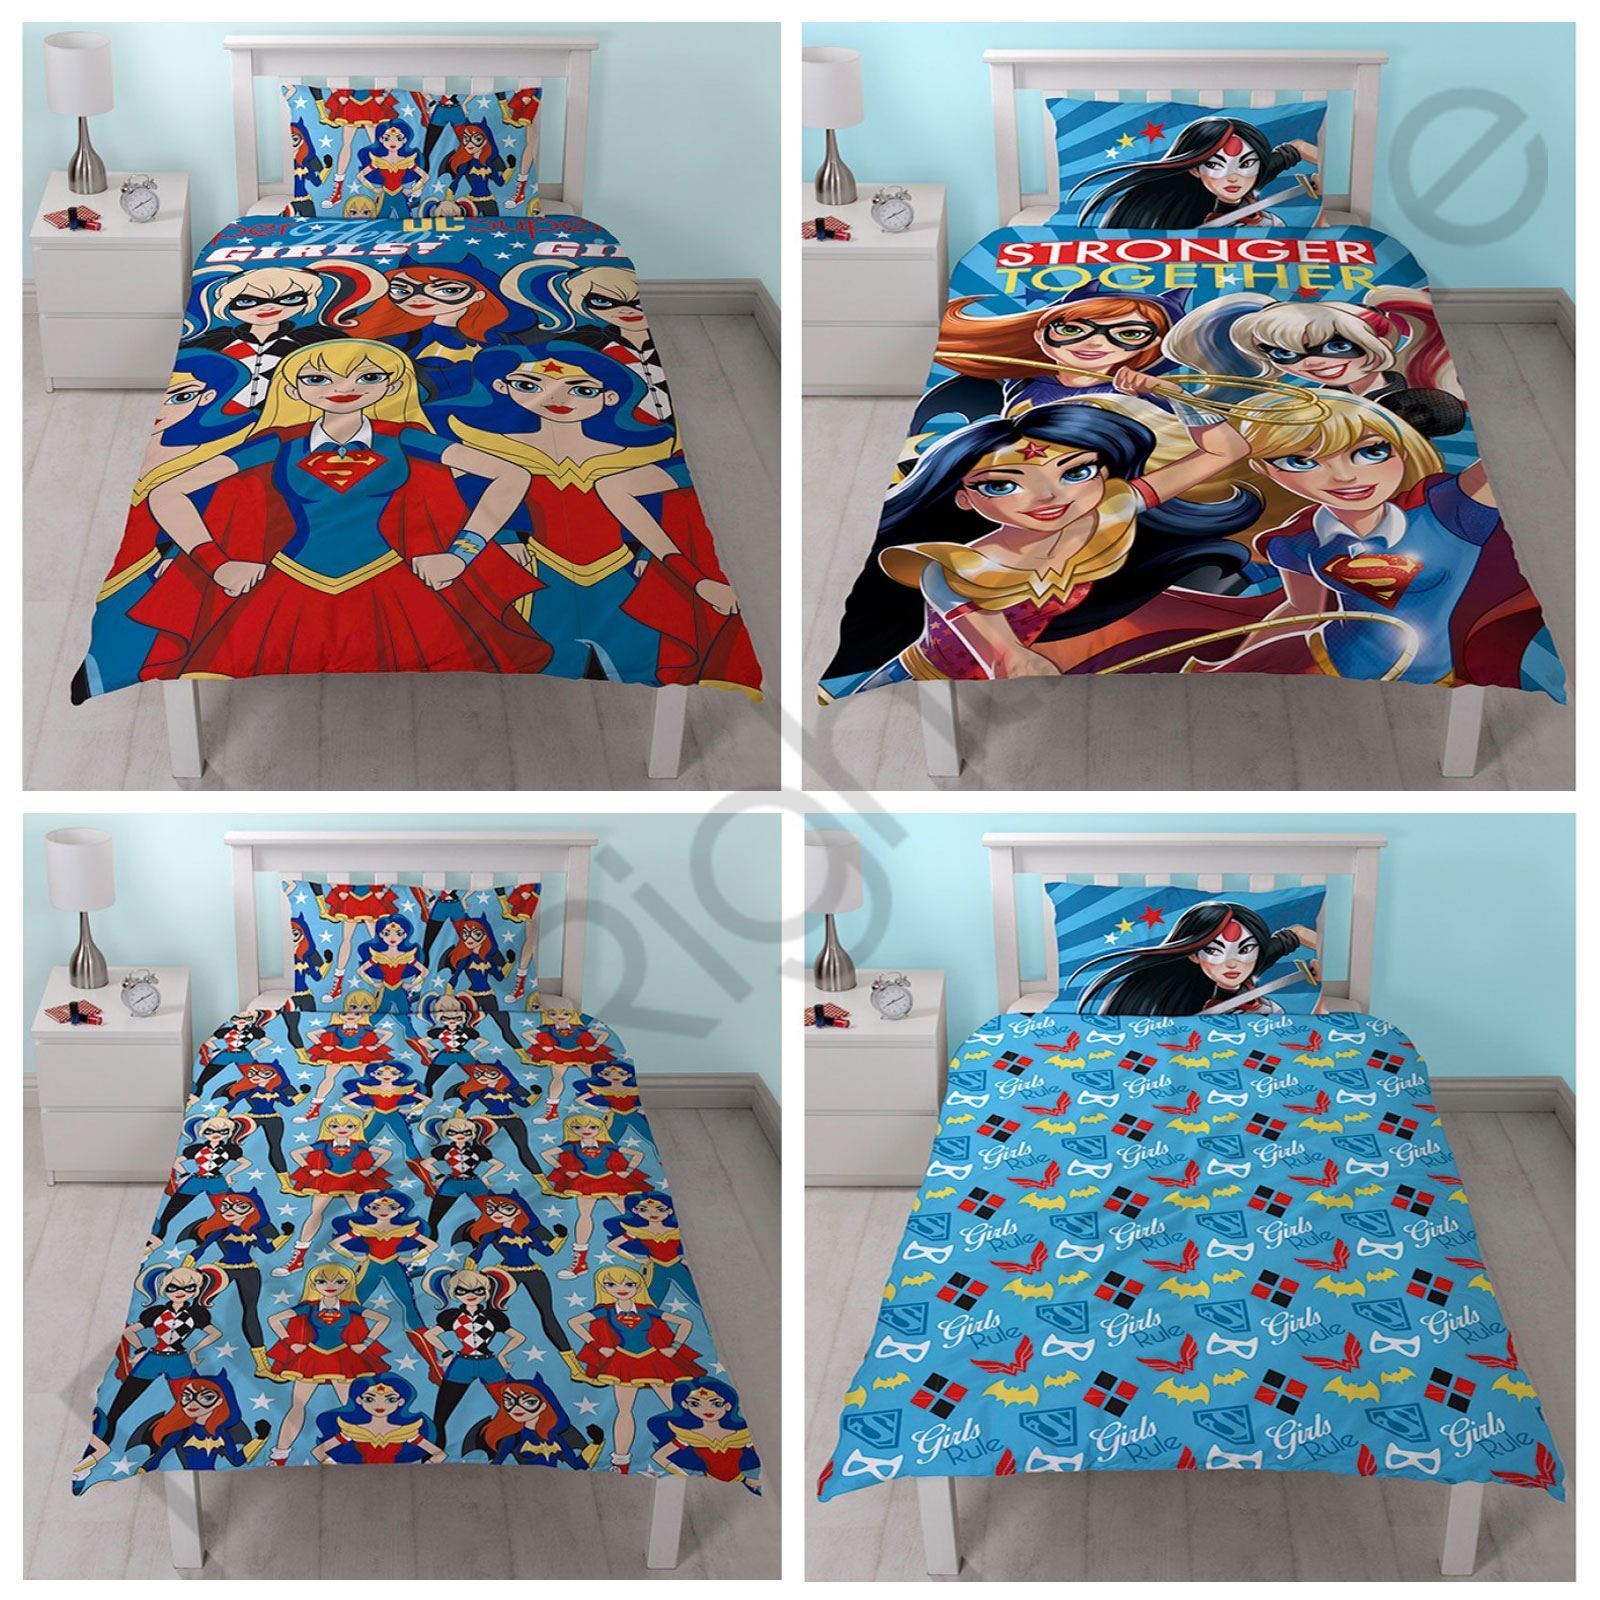 DC SUPER HERO GIRLS DUVET COVERS - SINGLE BEDDING KIDS BLUE | eBay